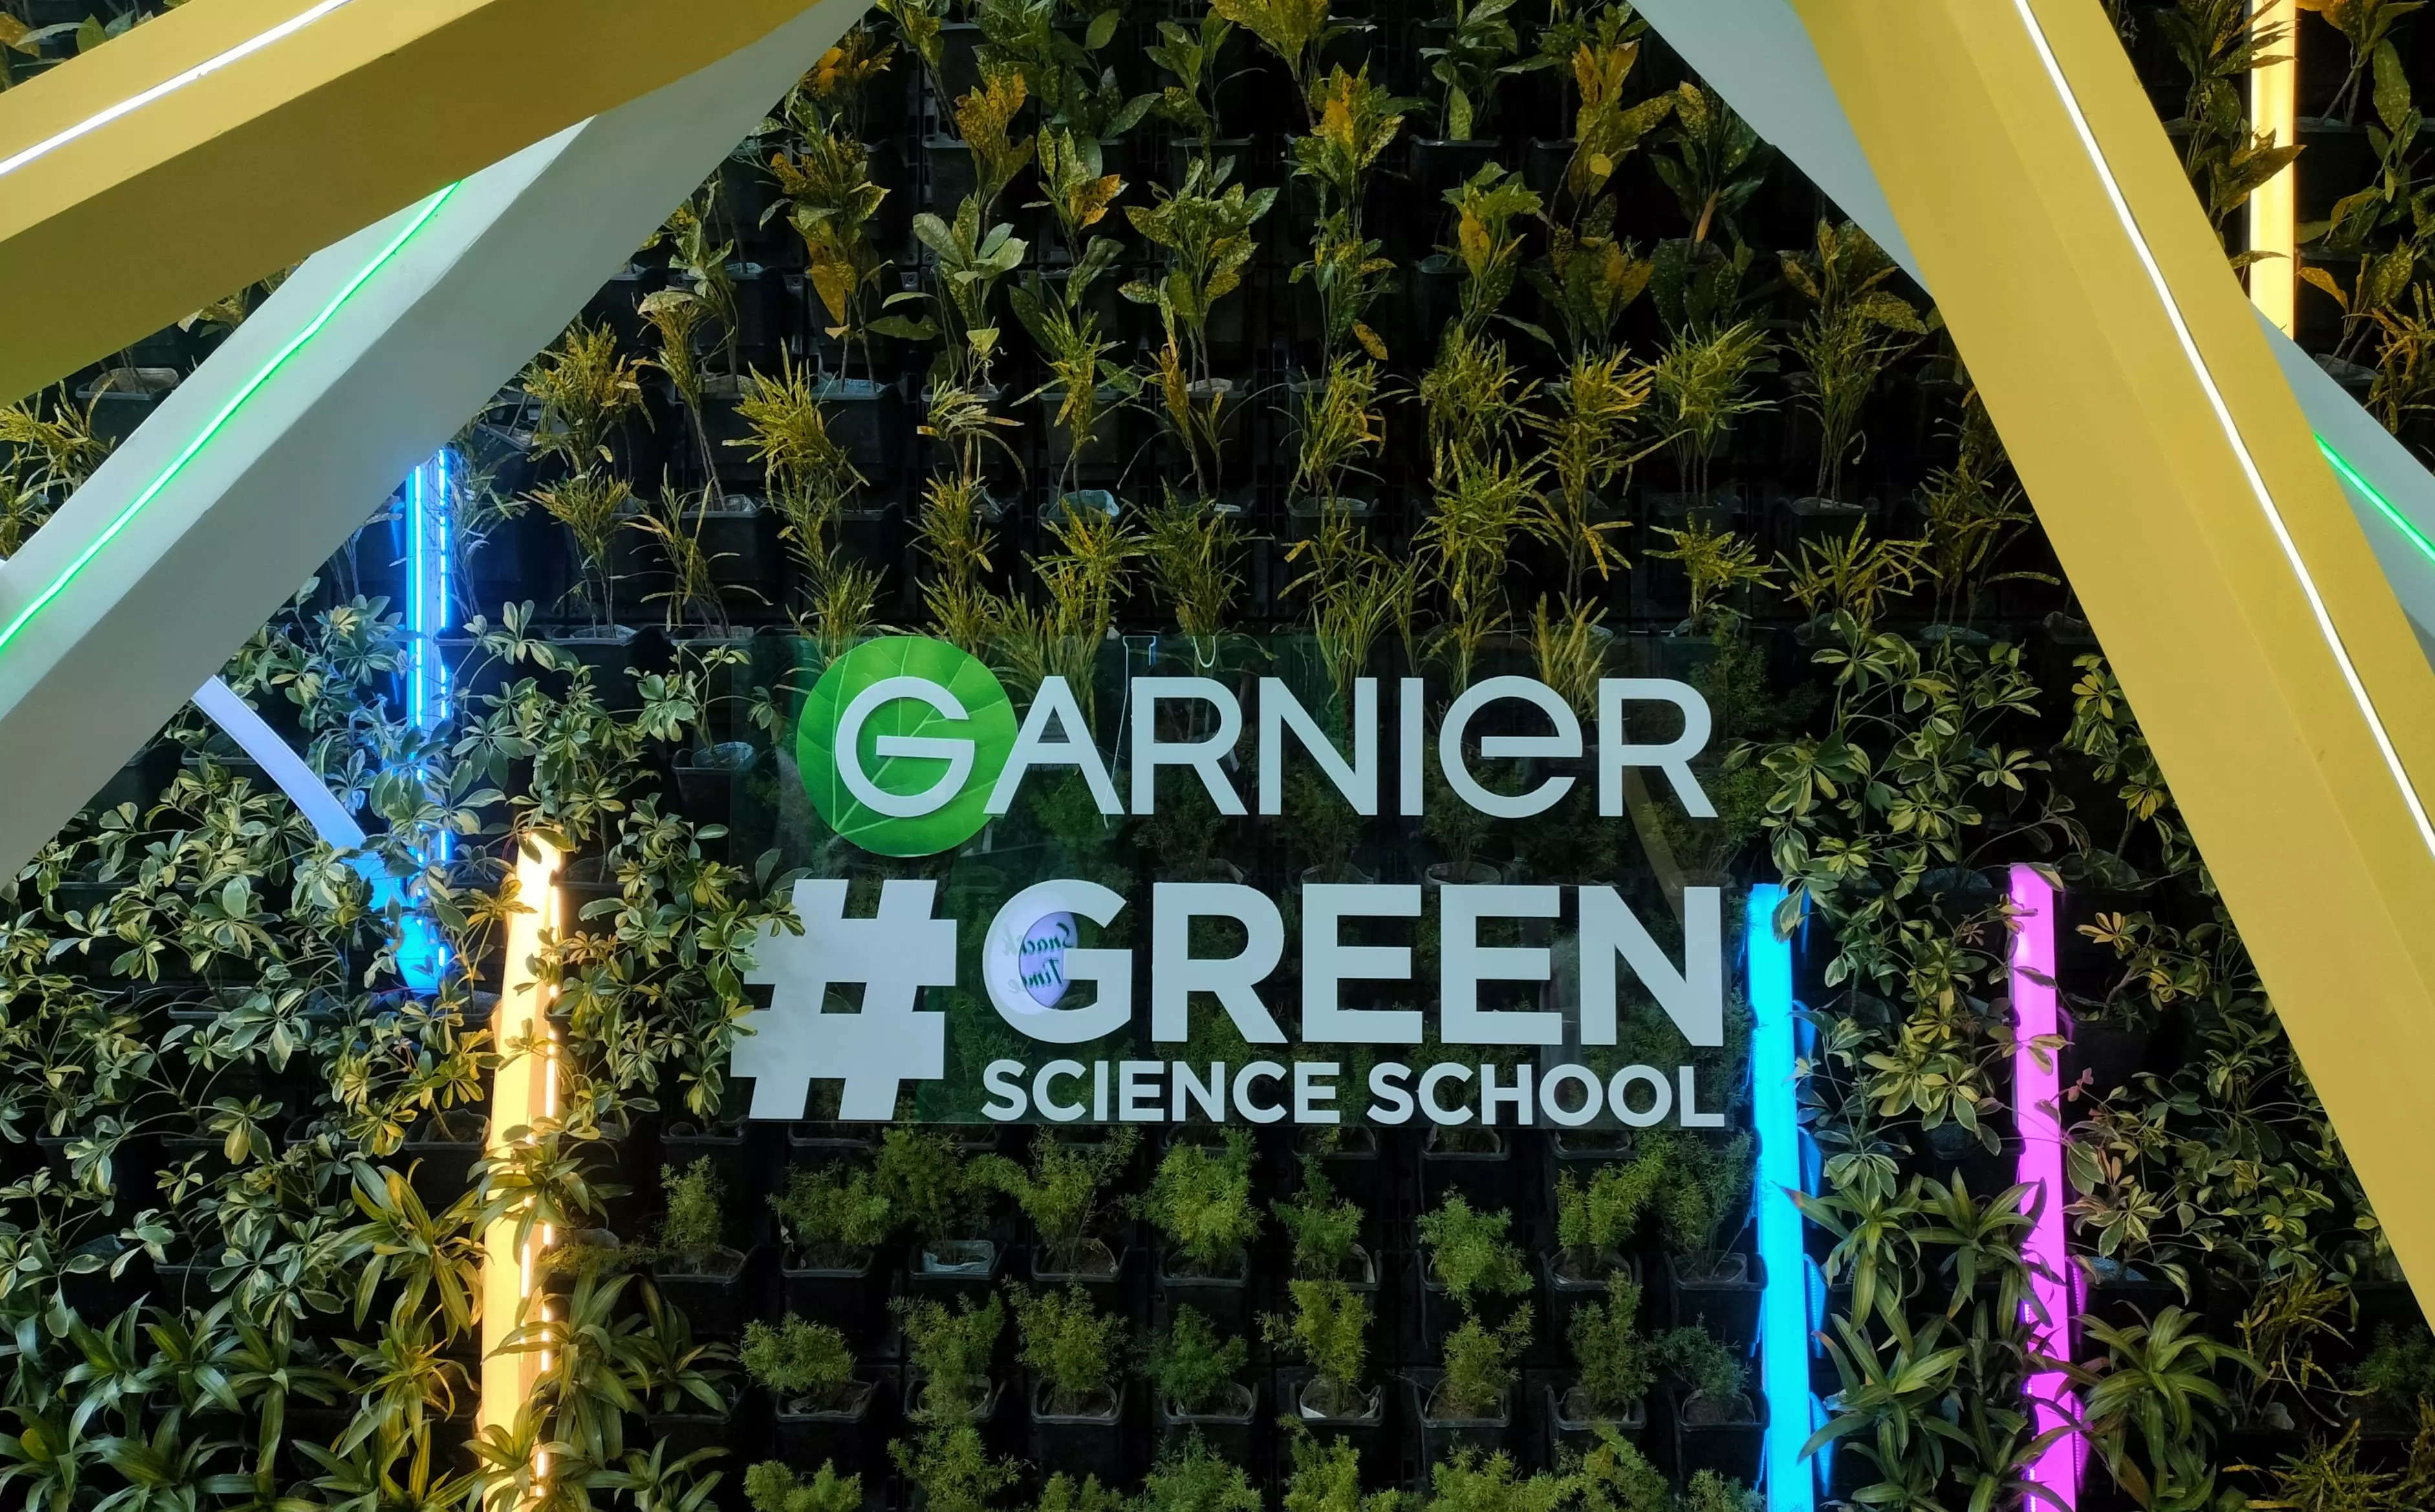 Garnier's #GreenScienceSchool